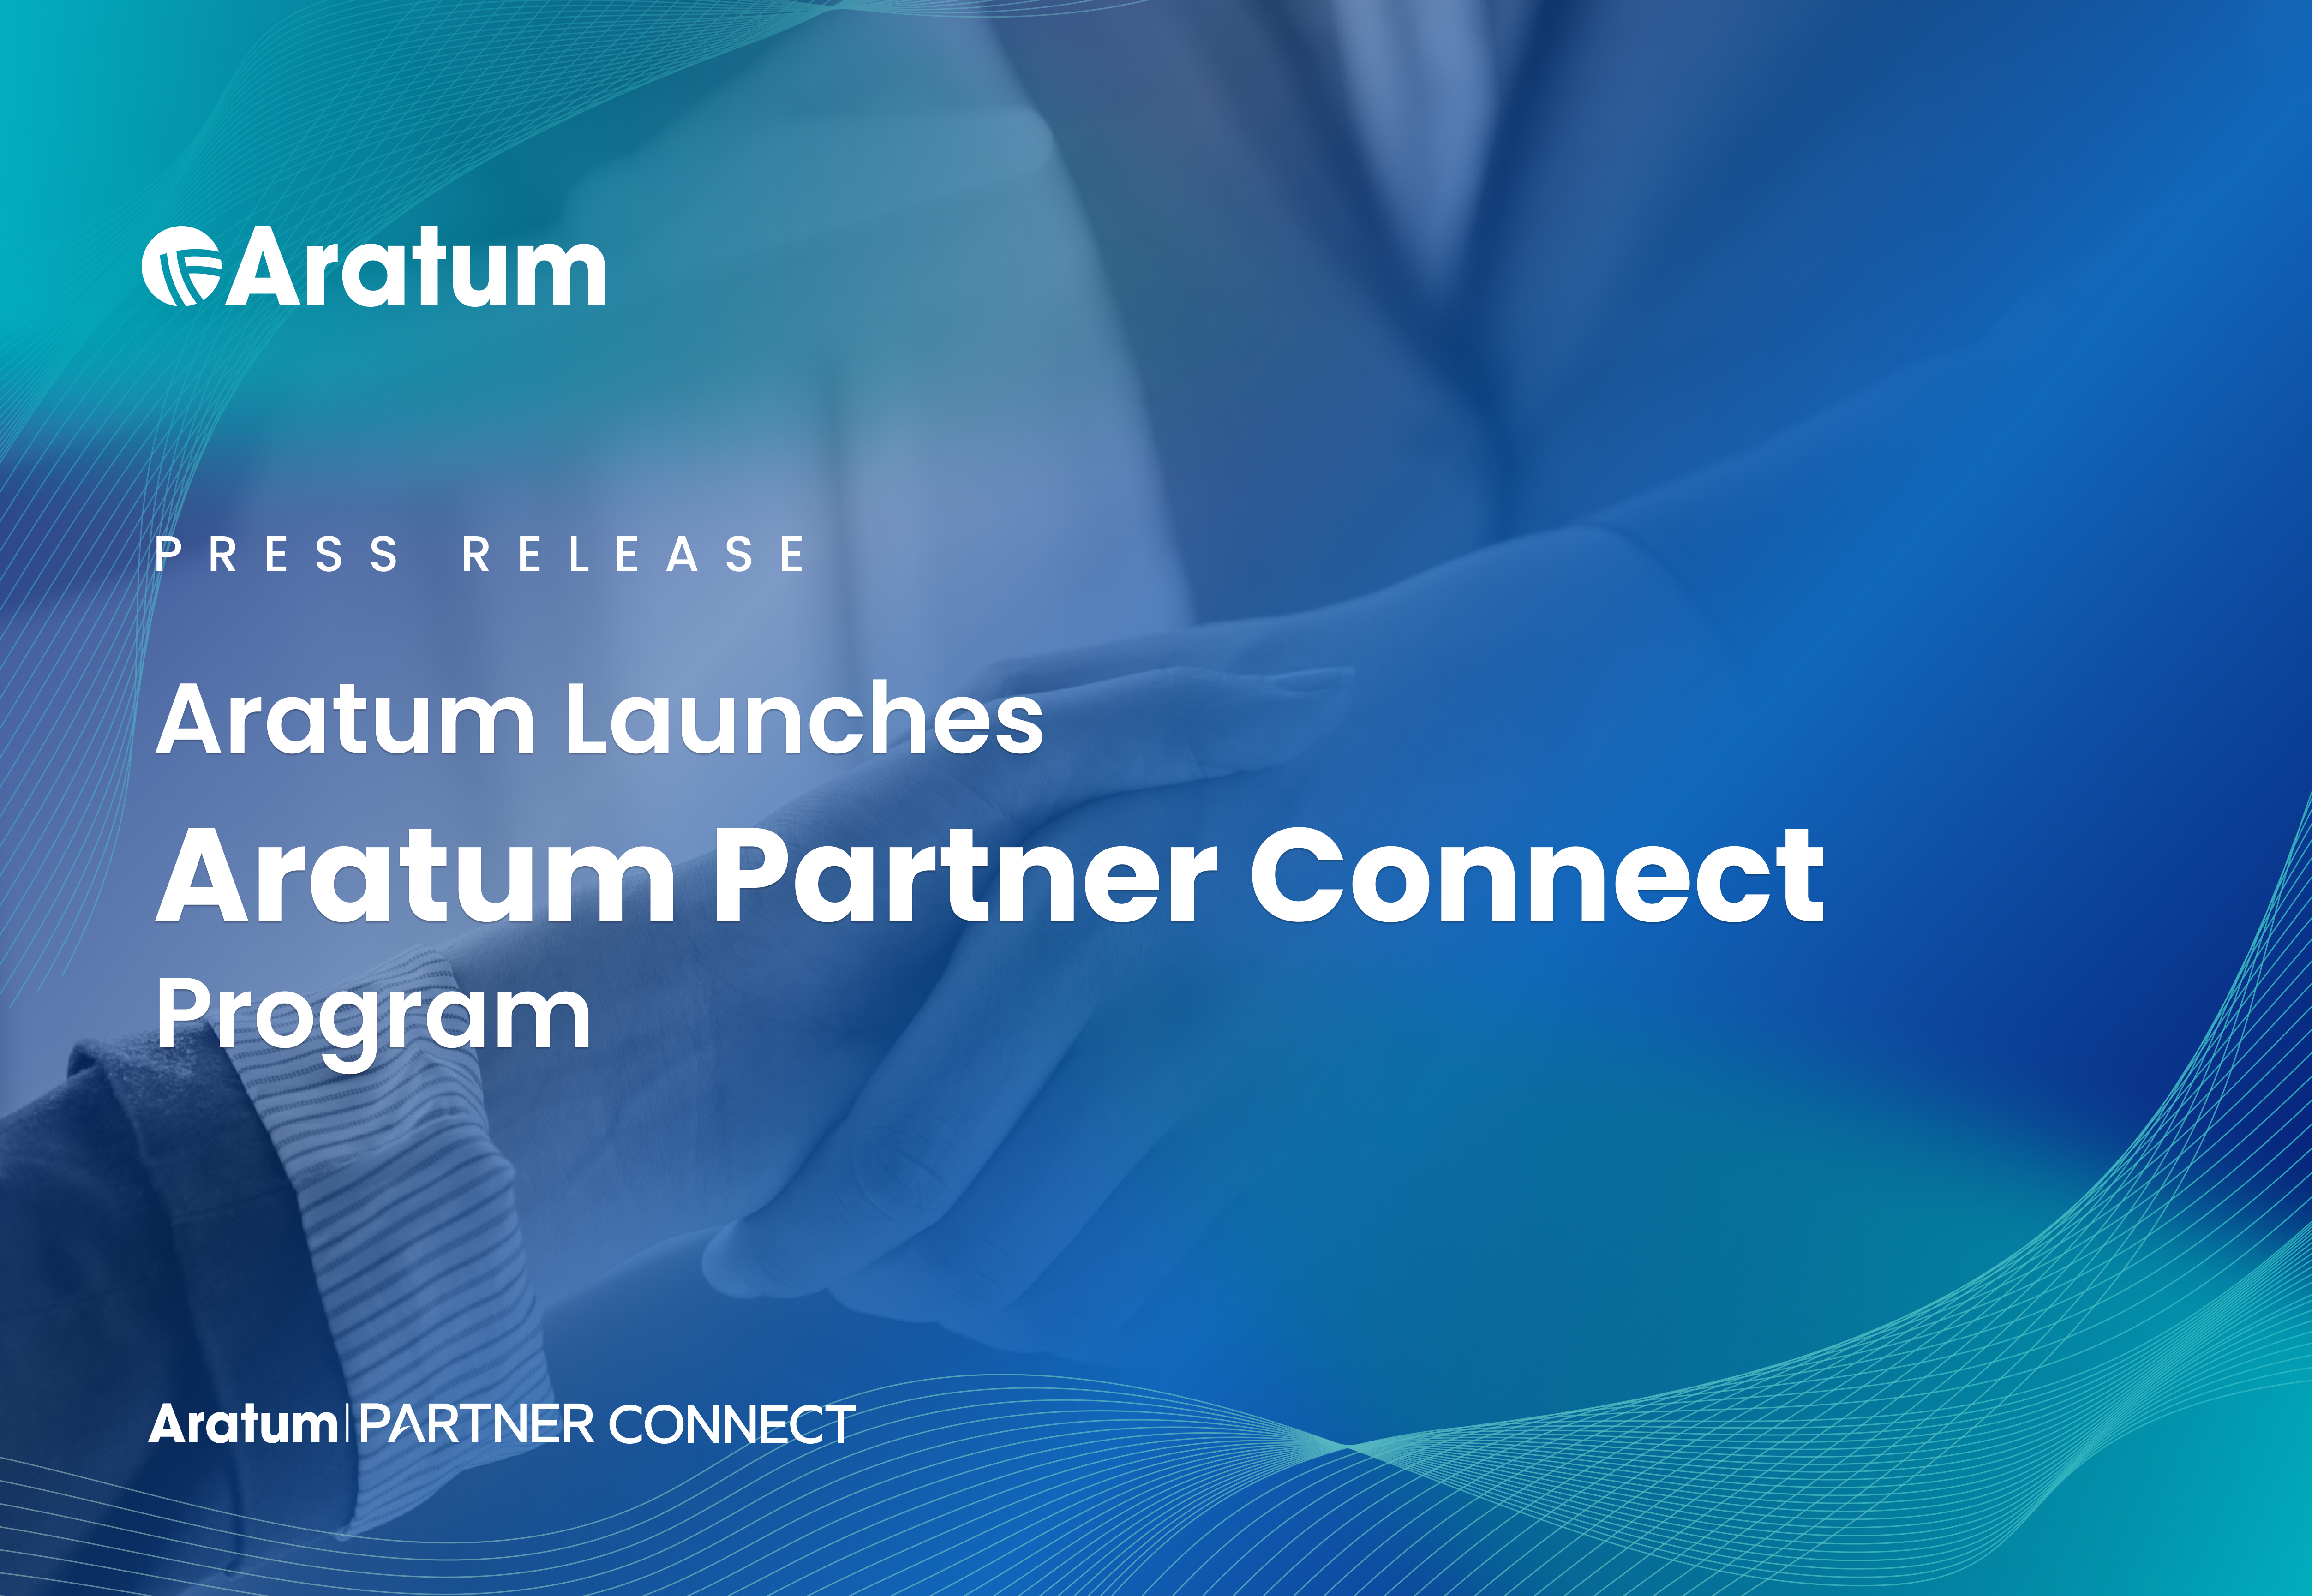 Aratum Launches “Aratum Partner Connect” Program